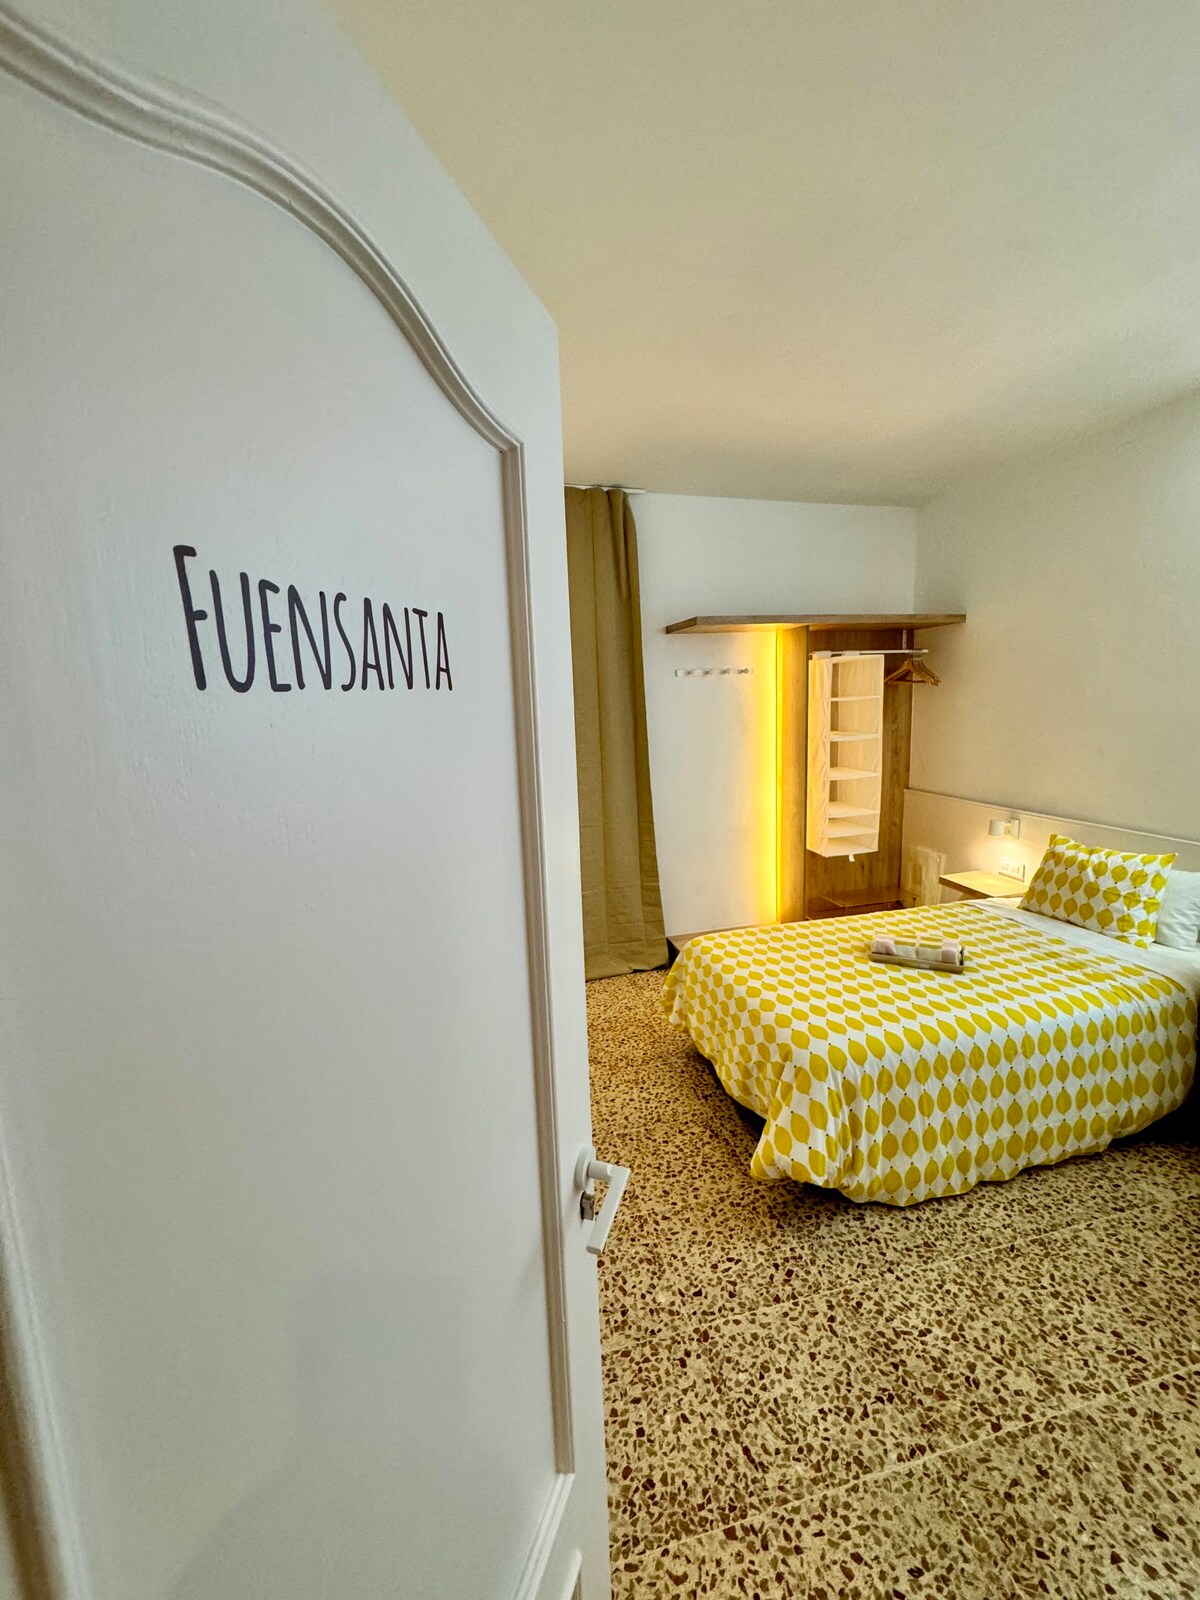 Guest House Espinardo, Fuensanta Room